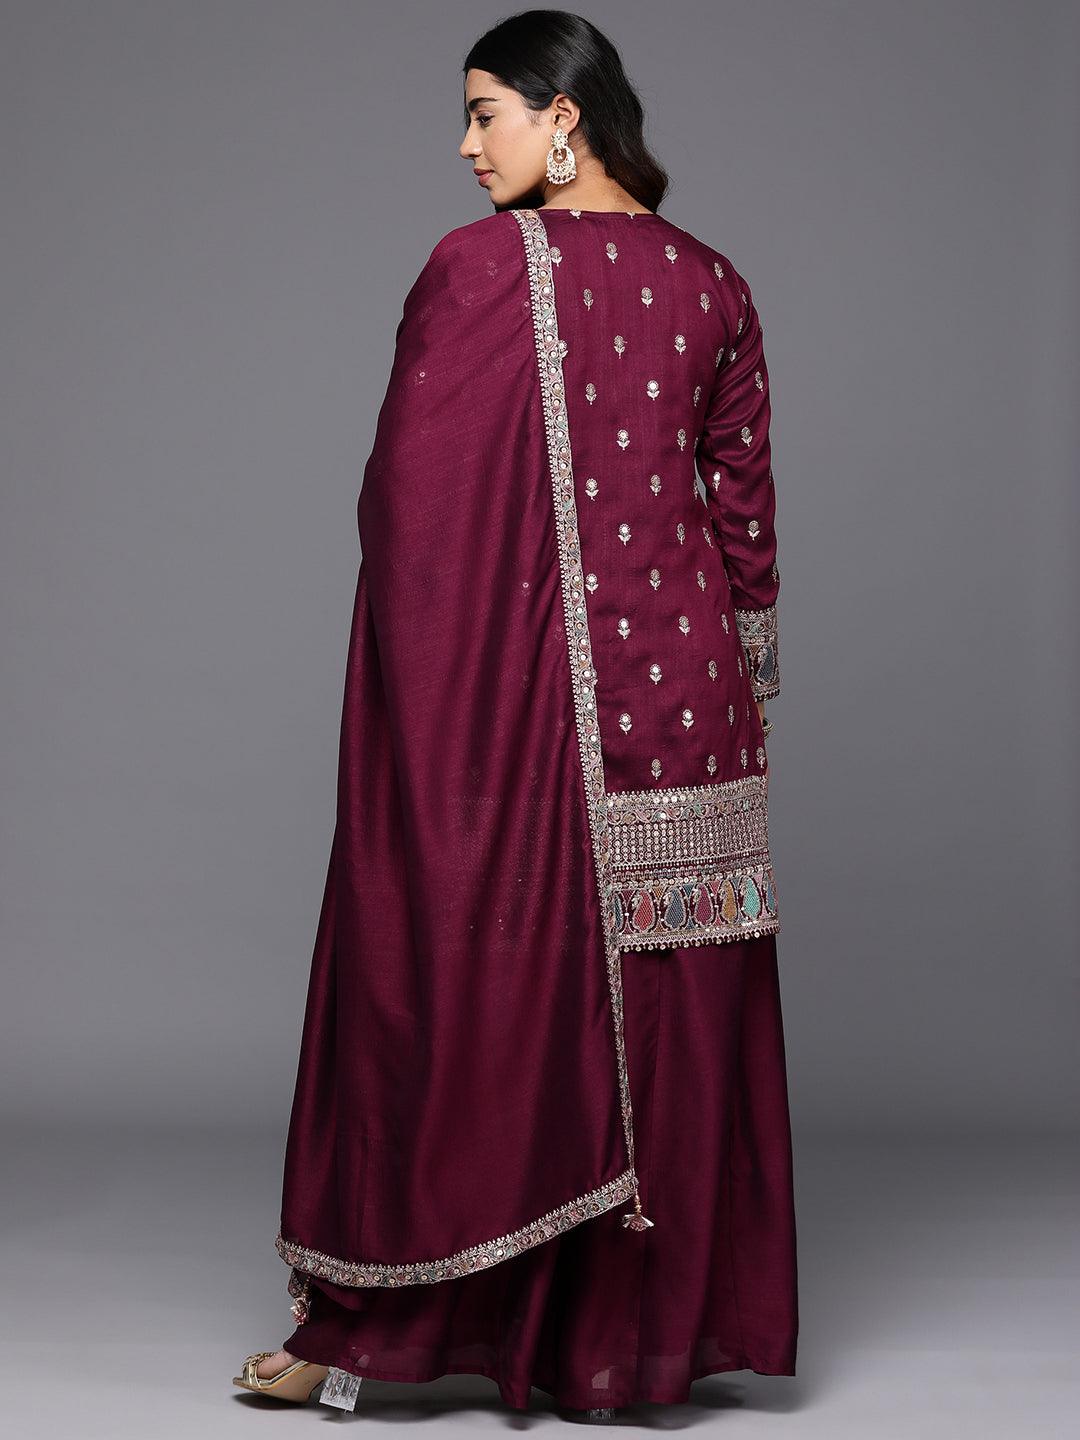 Libas Art Maroon Embroidered Silk Blend Pakistani Suit